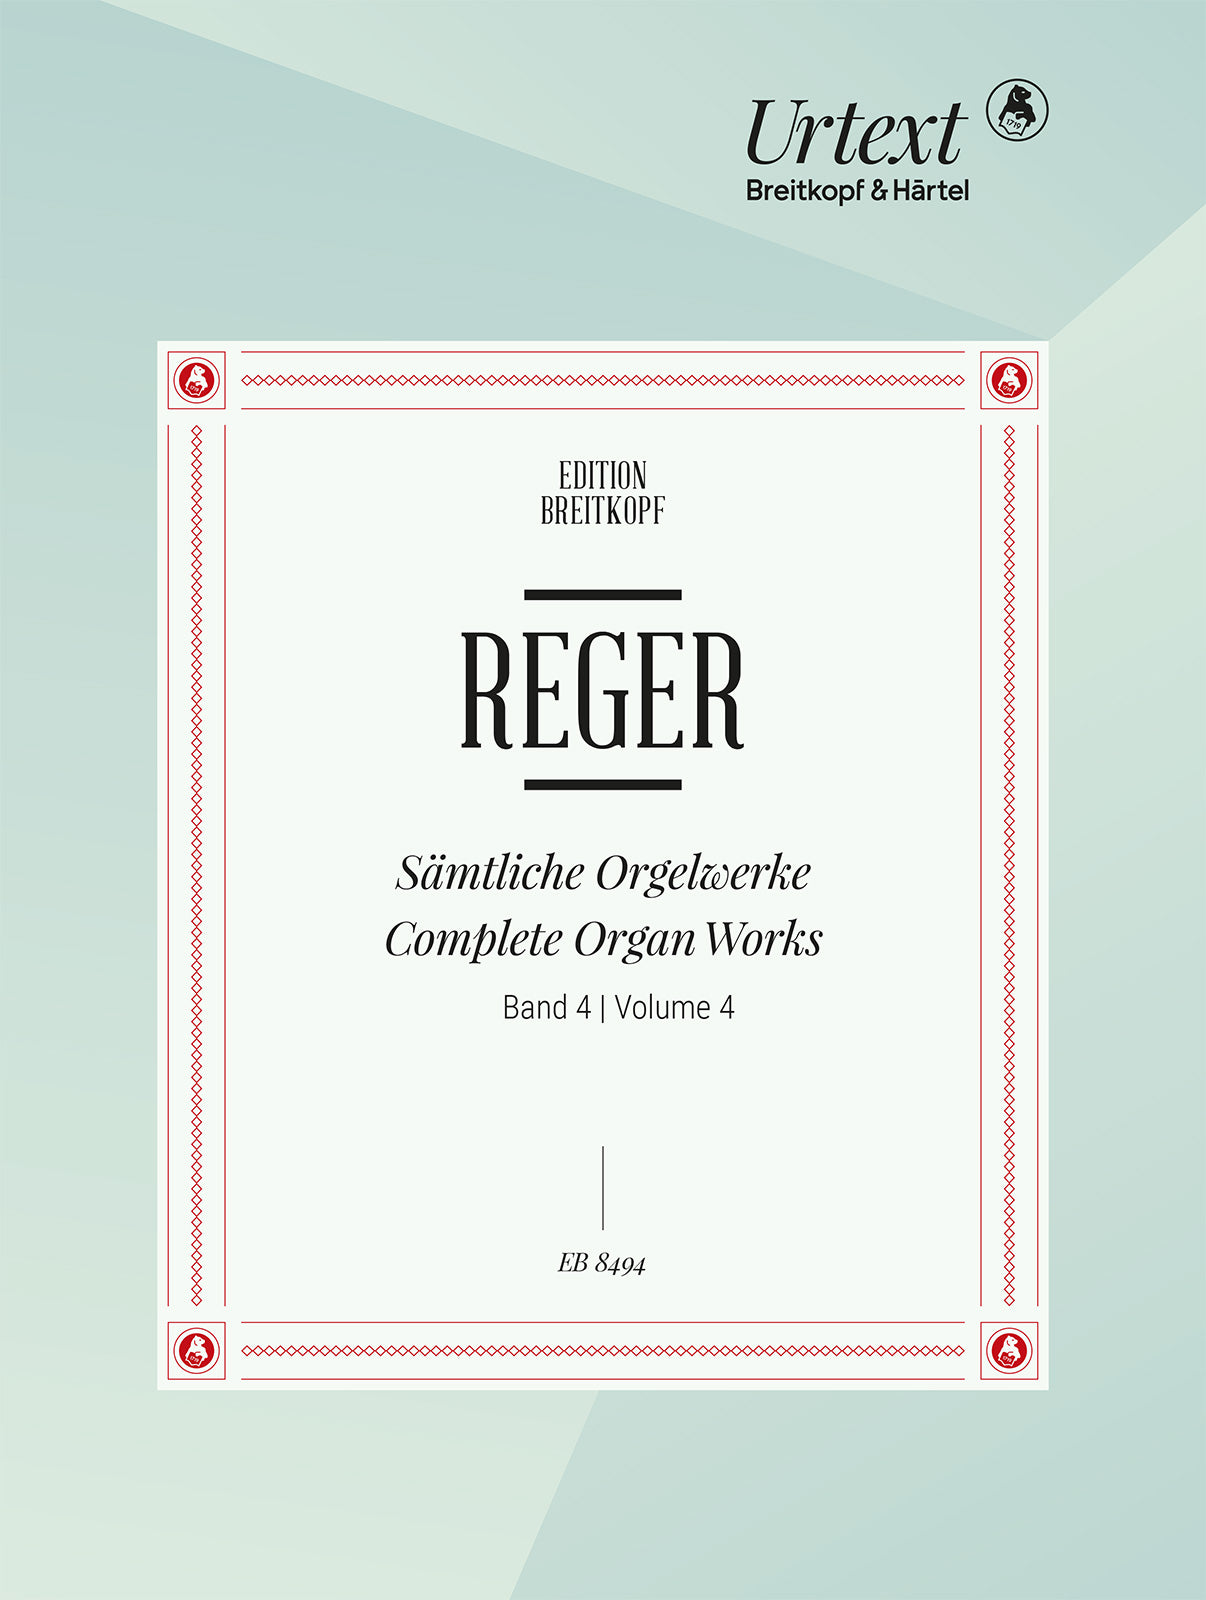 Reger: Free Organ Pieces - Part 2